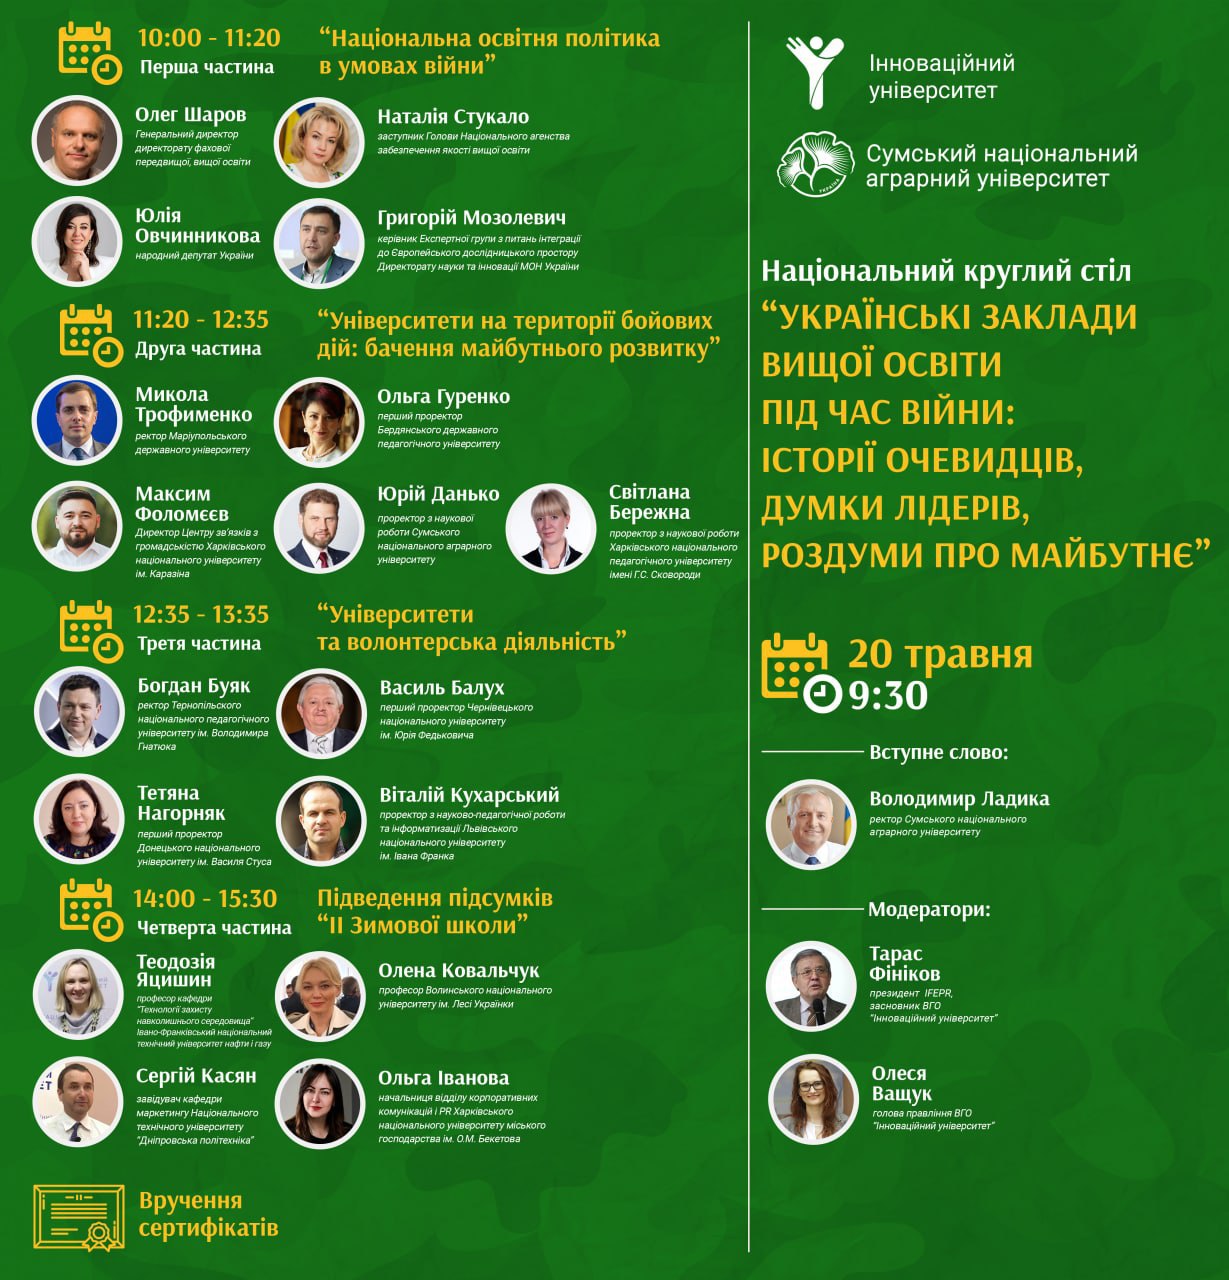 Відбувся національний круглий стіл «Українські заклади вищої освіти під час війни: історії очевидців, думки лідерів, роздуми про майбутнє»